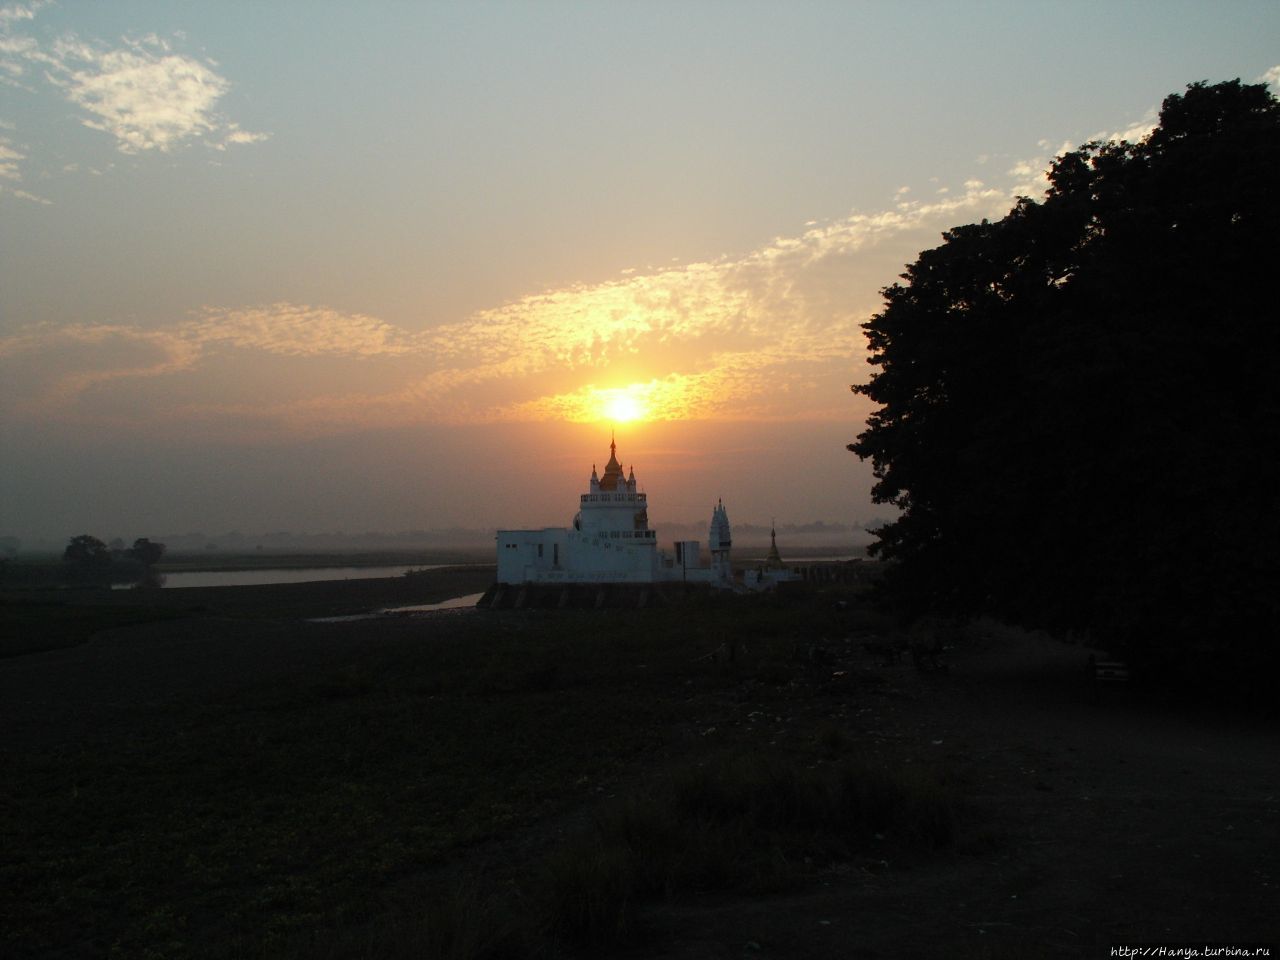 Пагода Shwe Modeptaw Pagoda на озере Таунтаман (Thaungthaman). Амарапура, Мьянма